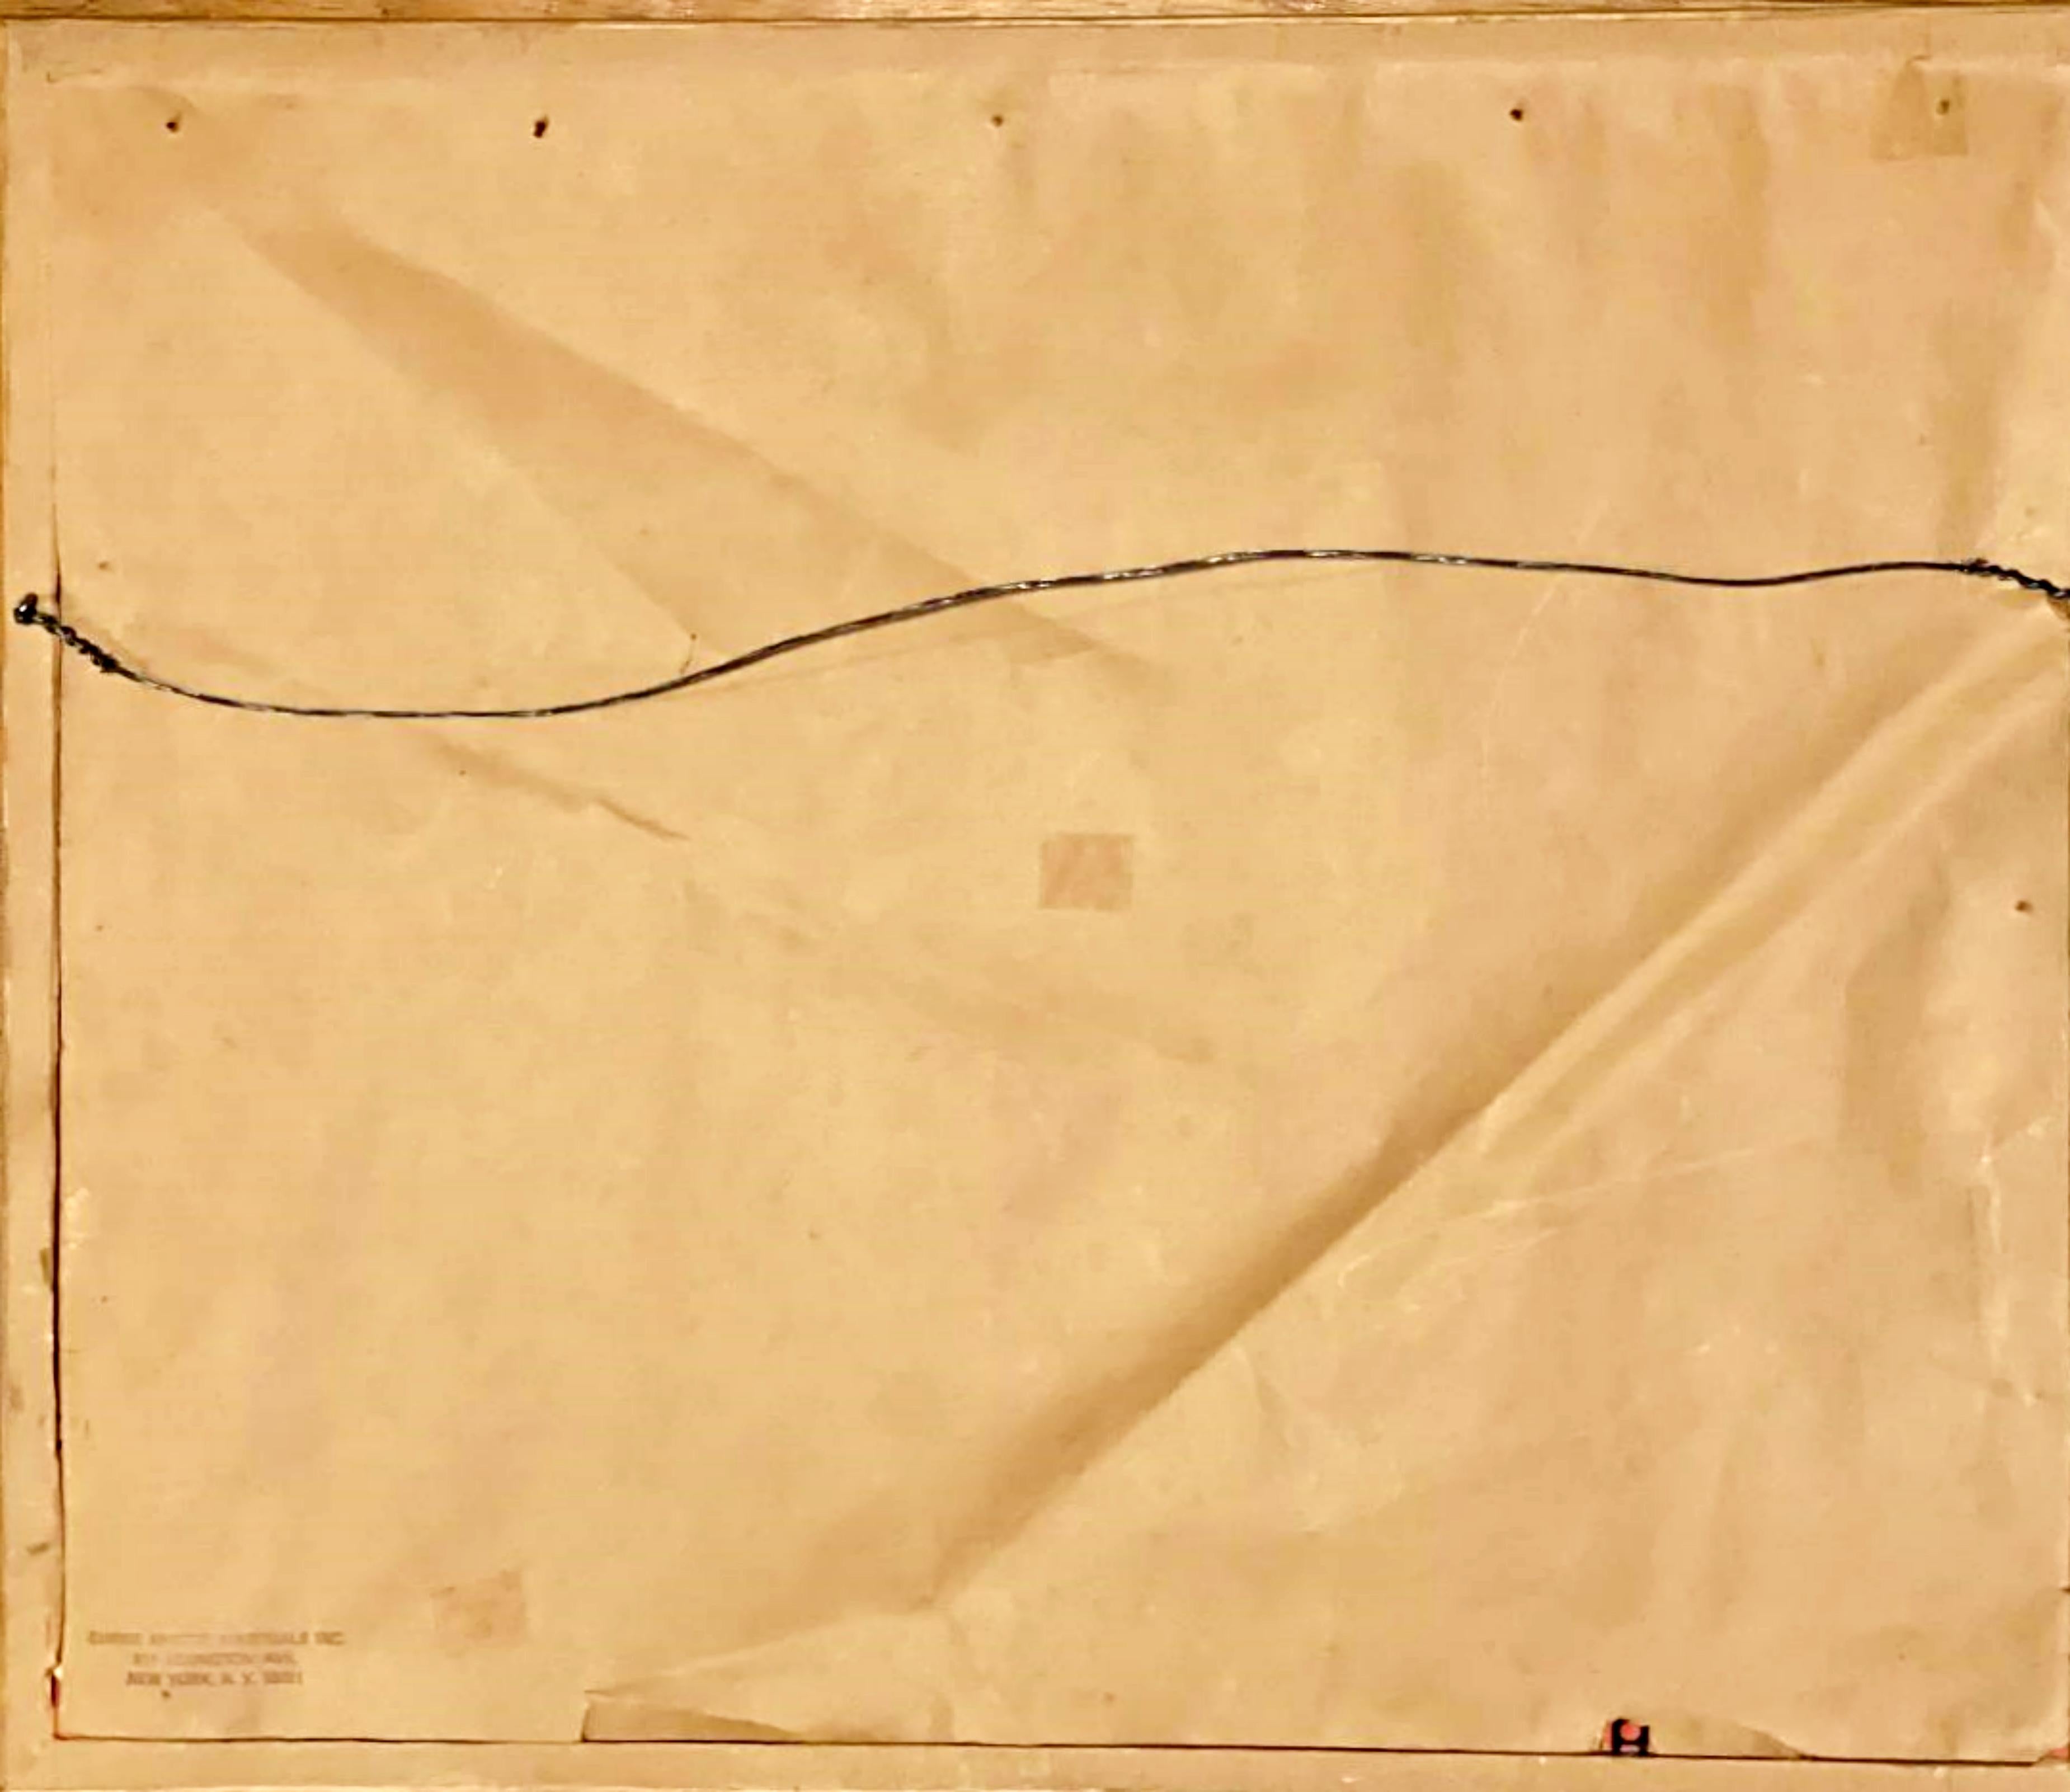 Lois Dodd
Landschaft ohne Titel, 1990
Farbige Kreide auf grauem Velinpapier
Signiert, datiert und beschriftet 